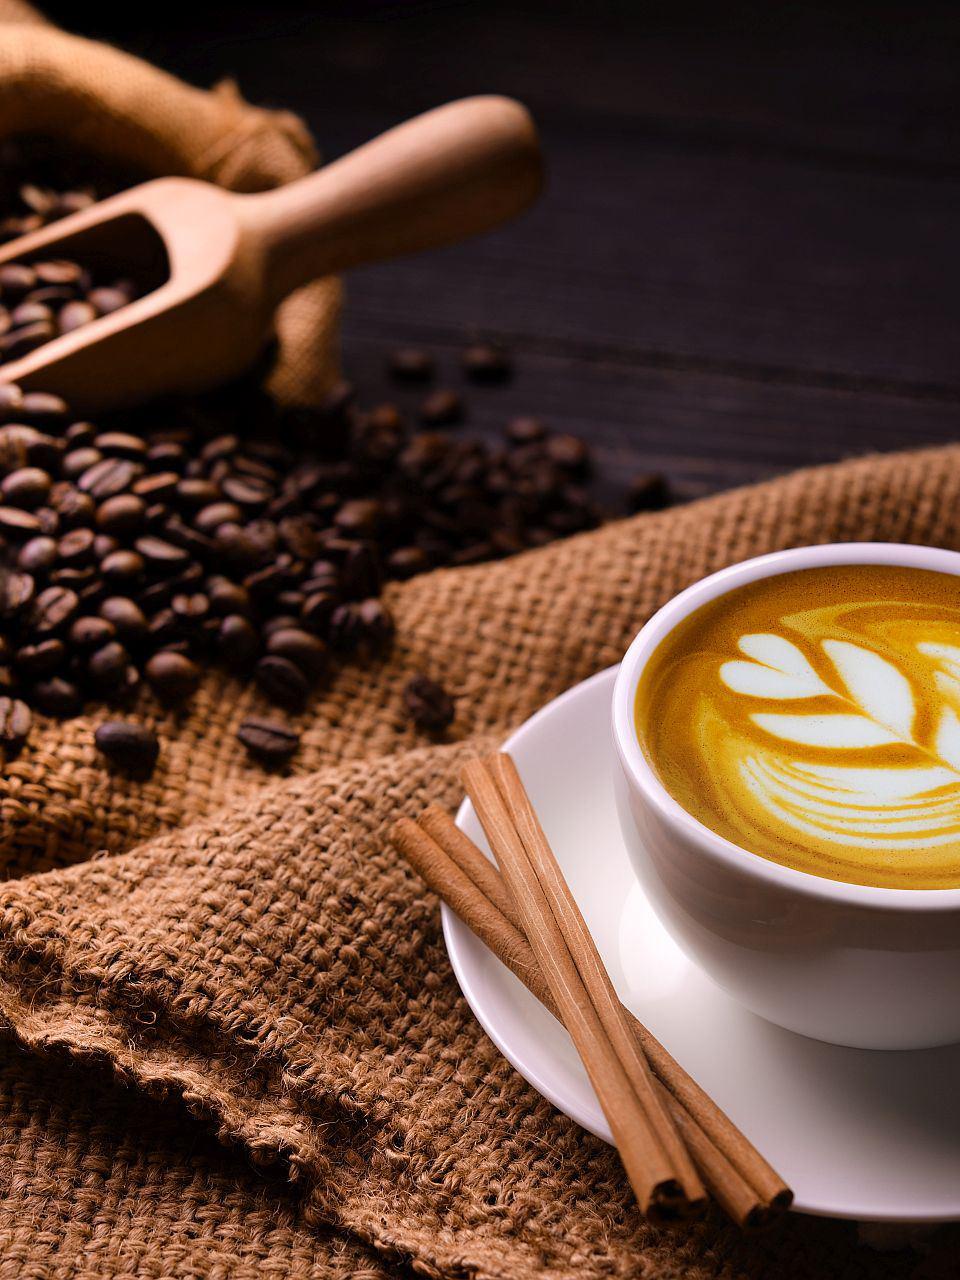 Bohnen für Espresso, Cappuccino und Co. – Entdecken Sie die Vielfalt der Kaffeespezialitäten